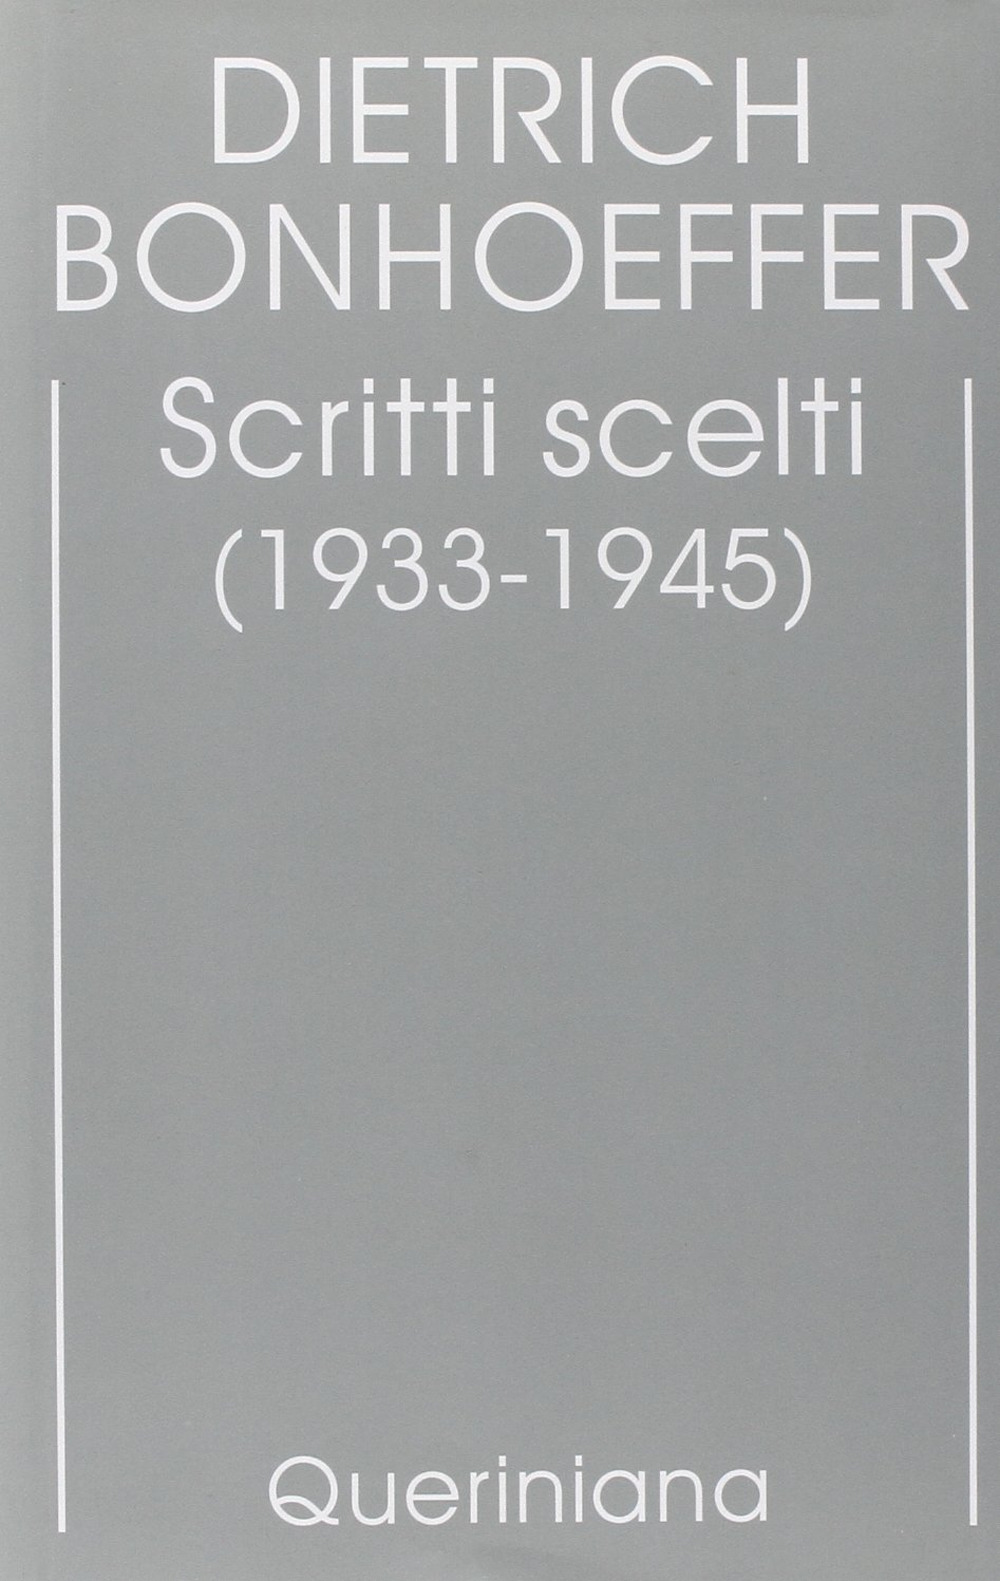 Edizione critica delle opere di D. Bonhoeffer. Vol. 10: Scritti scelti (1933-1945)